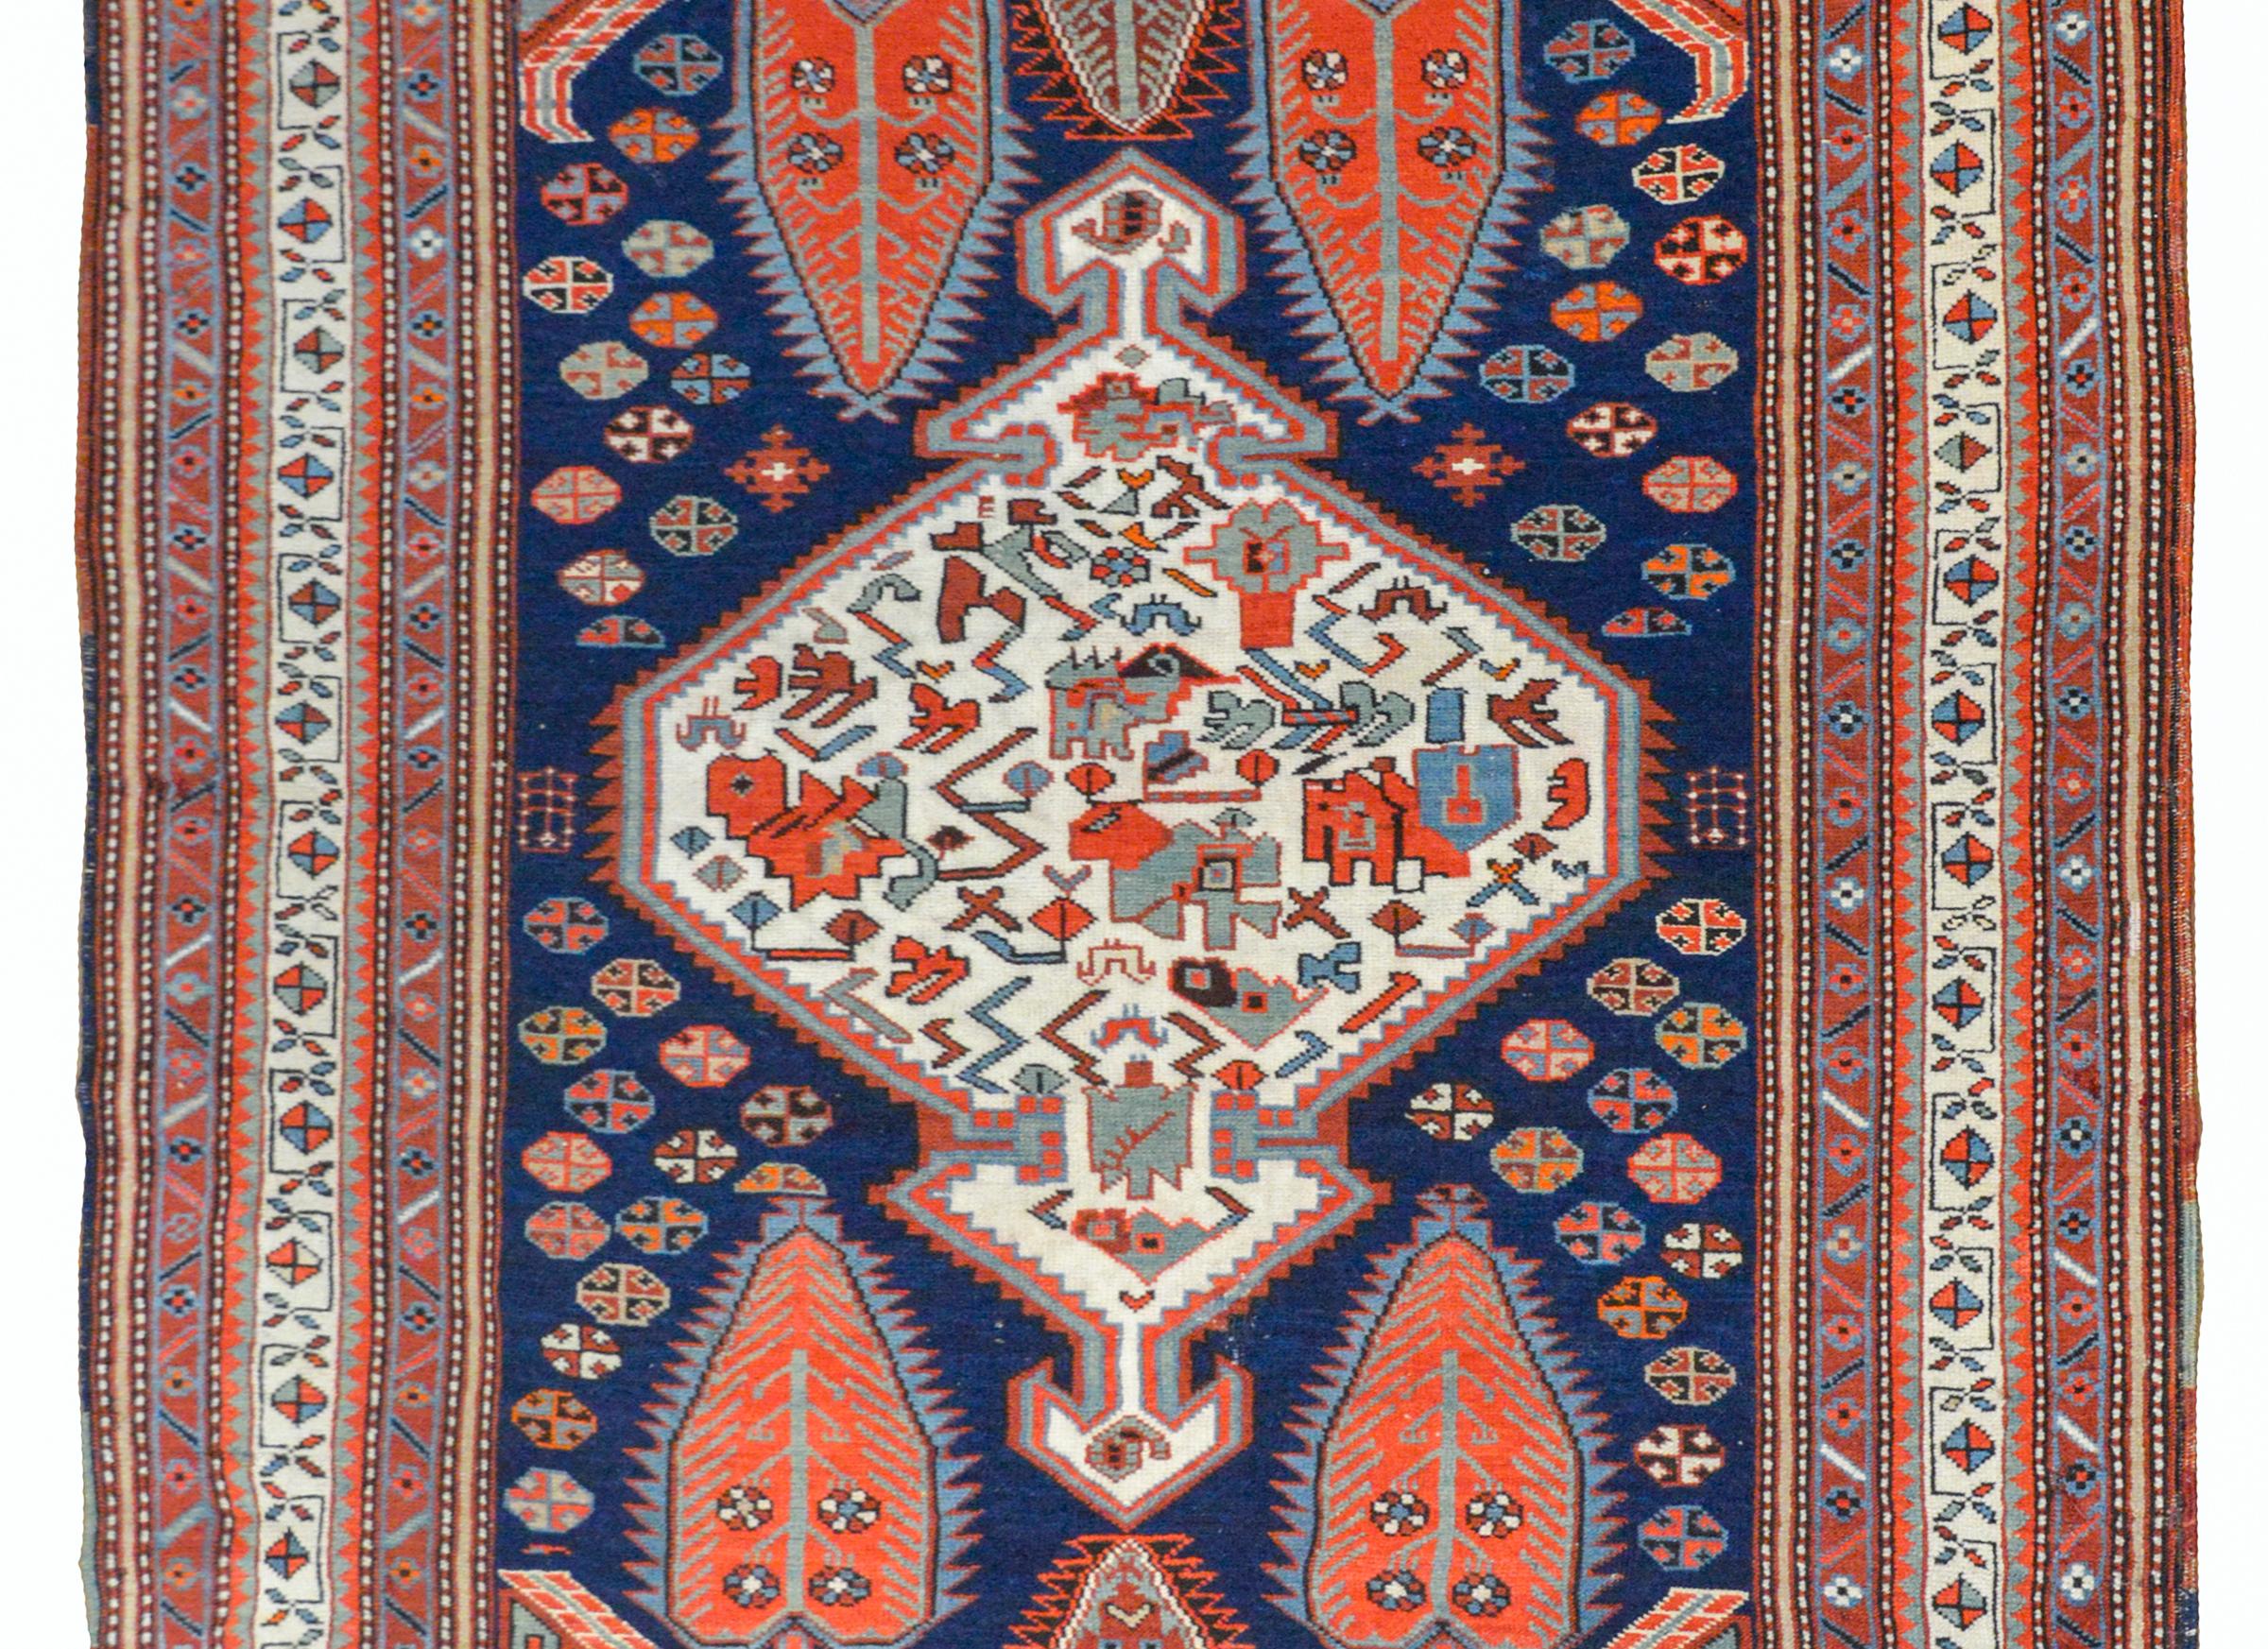 Fantastique tapis Shkli du début du 20e siècle provenant de la région de Karabagh dans le Caucase. Ce tapis présente un motif tribal audacieux avec un grand médaillon en diamant blanc avec des fleurs stylisées et des vignes tissées en cramoisi,